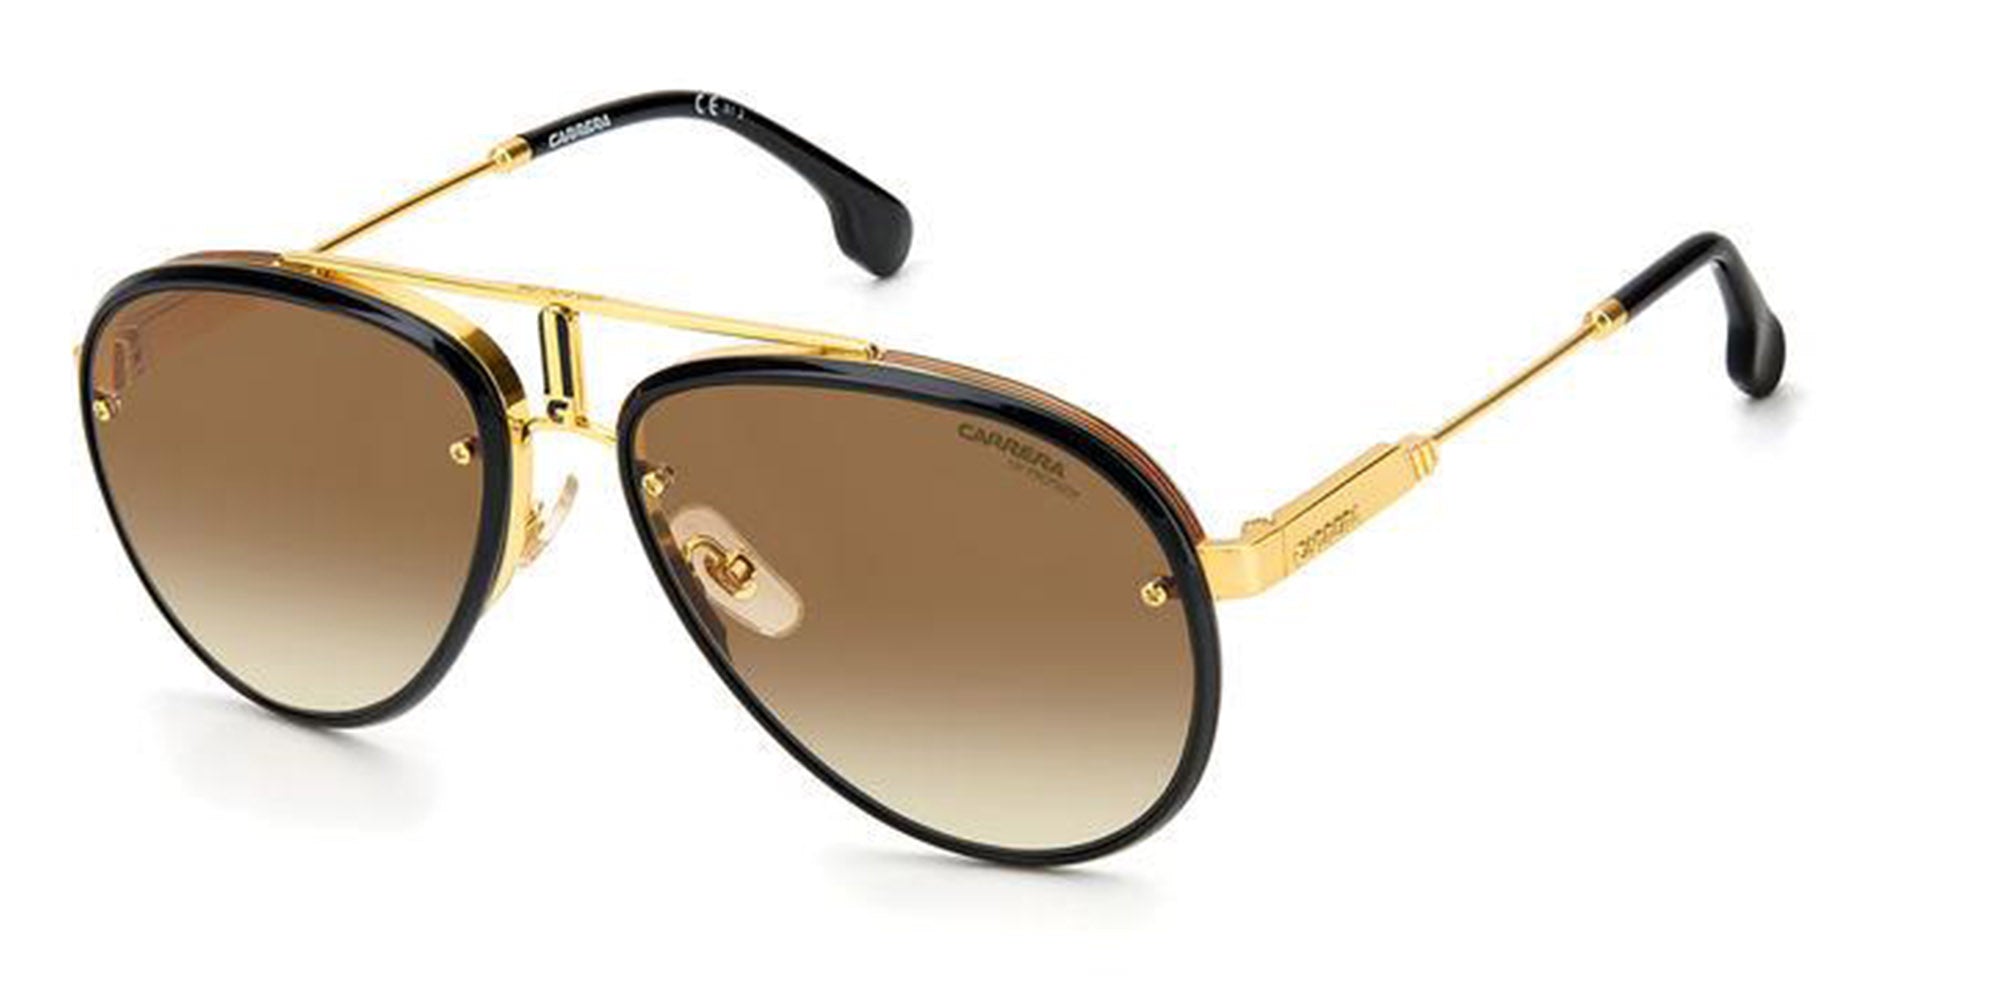 Carrera Glory Sunglasses | Fashion Eyewear